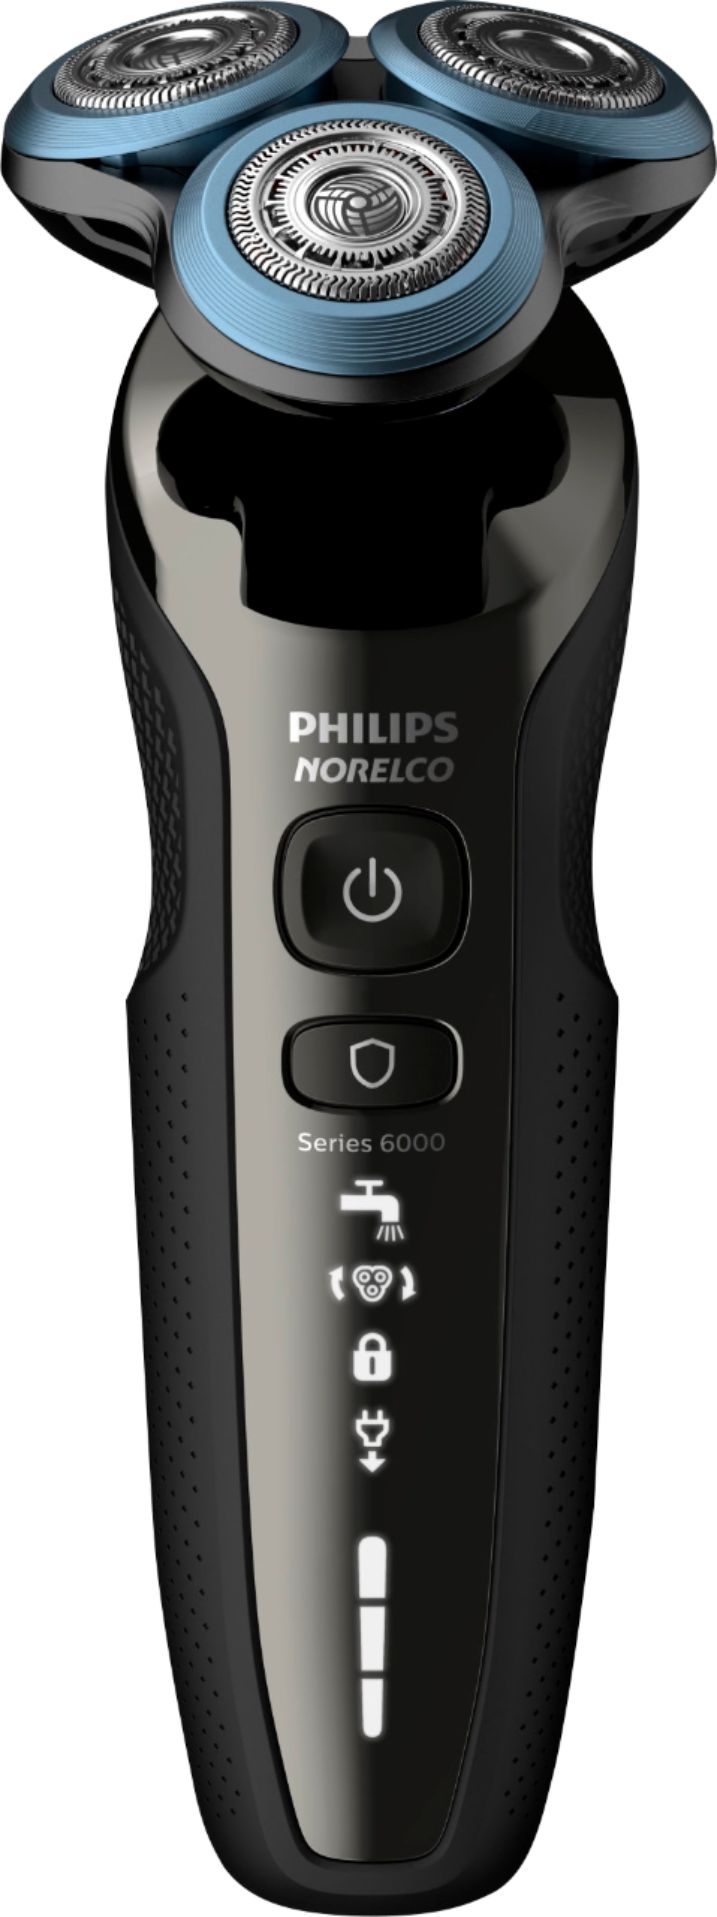 Best Buy Philips Norelco Series 6000 Smartclick Wetdry Electric